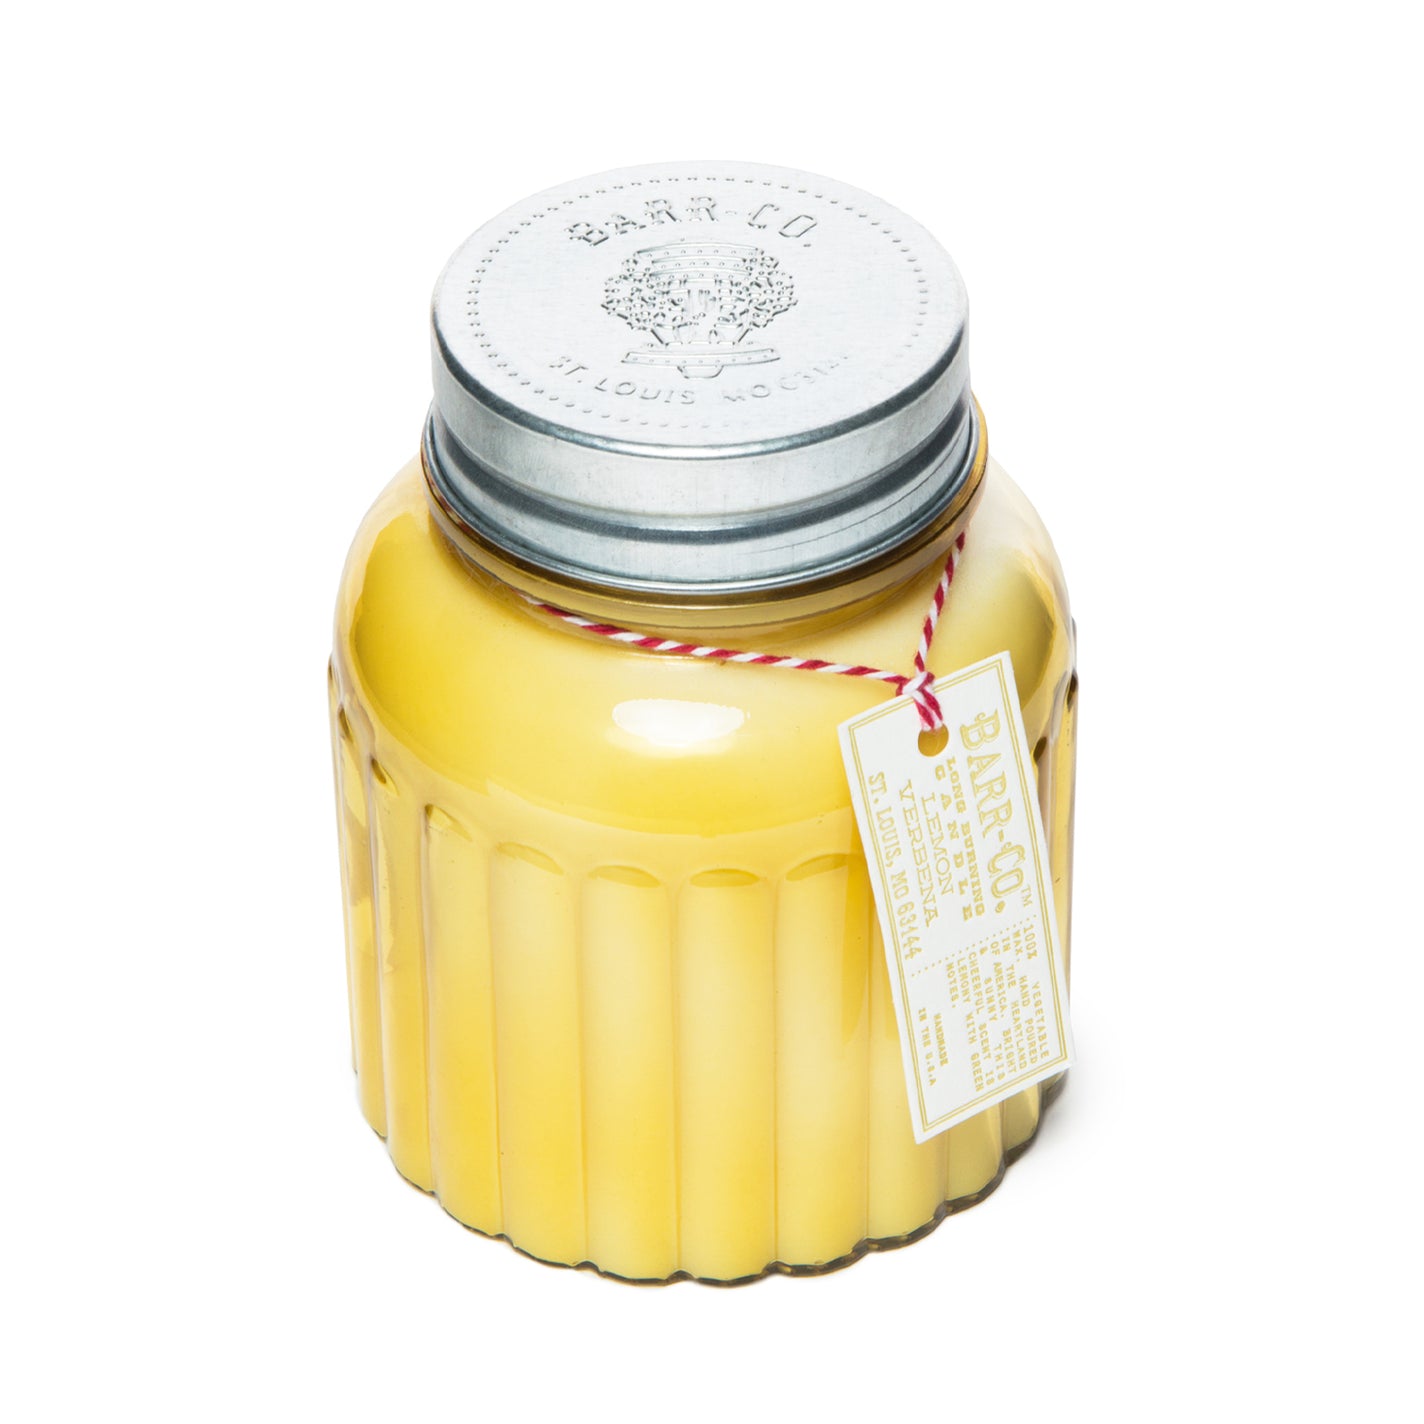 Barr-Co Lemon Verbena 120hr Apothecary Candle